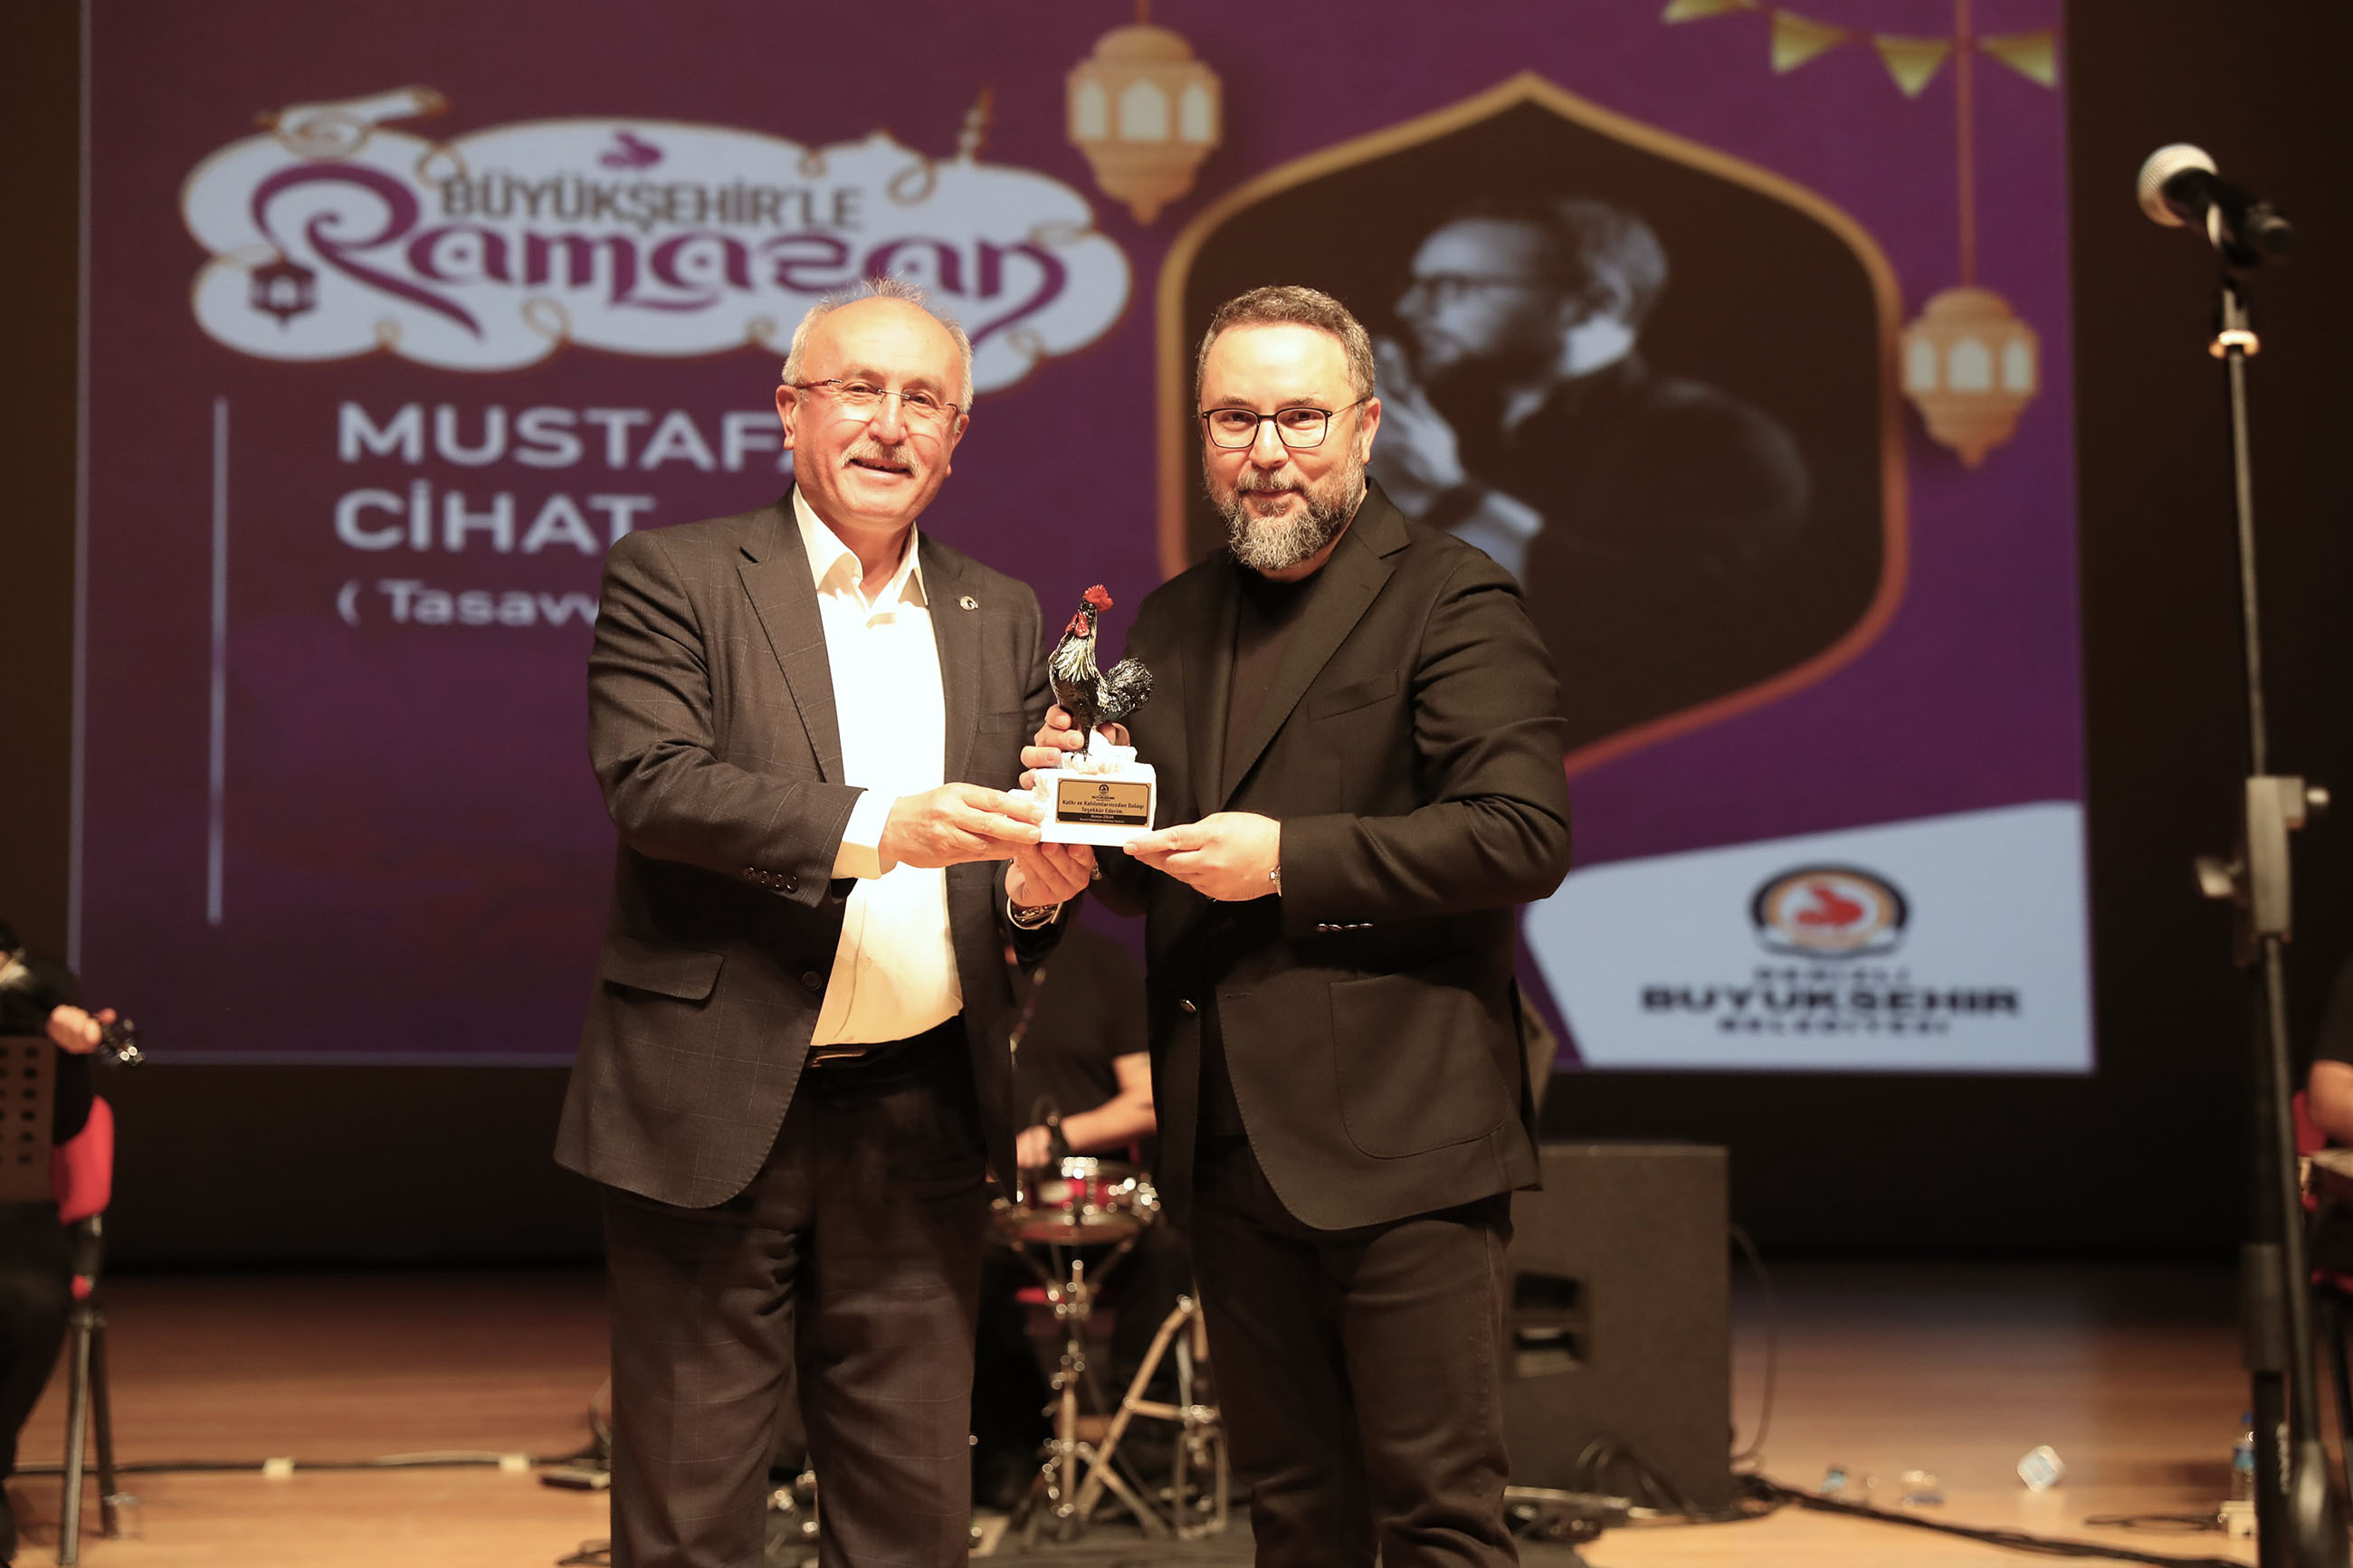 Büyükşehir’le Ramazan, Mustafa Cihat'ı ağırladı (5)